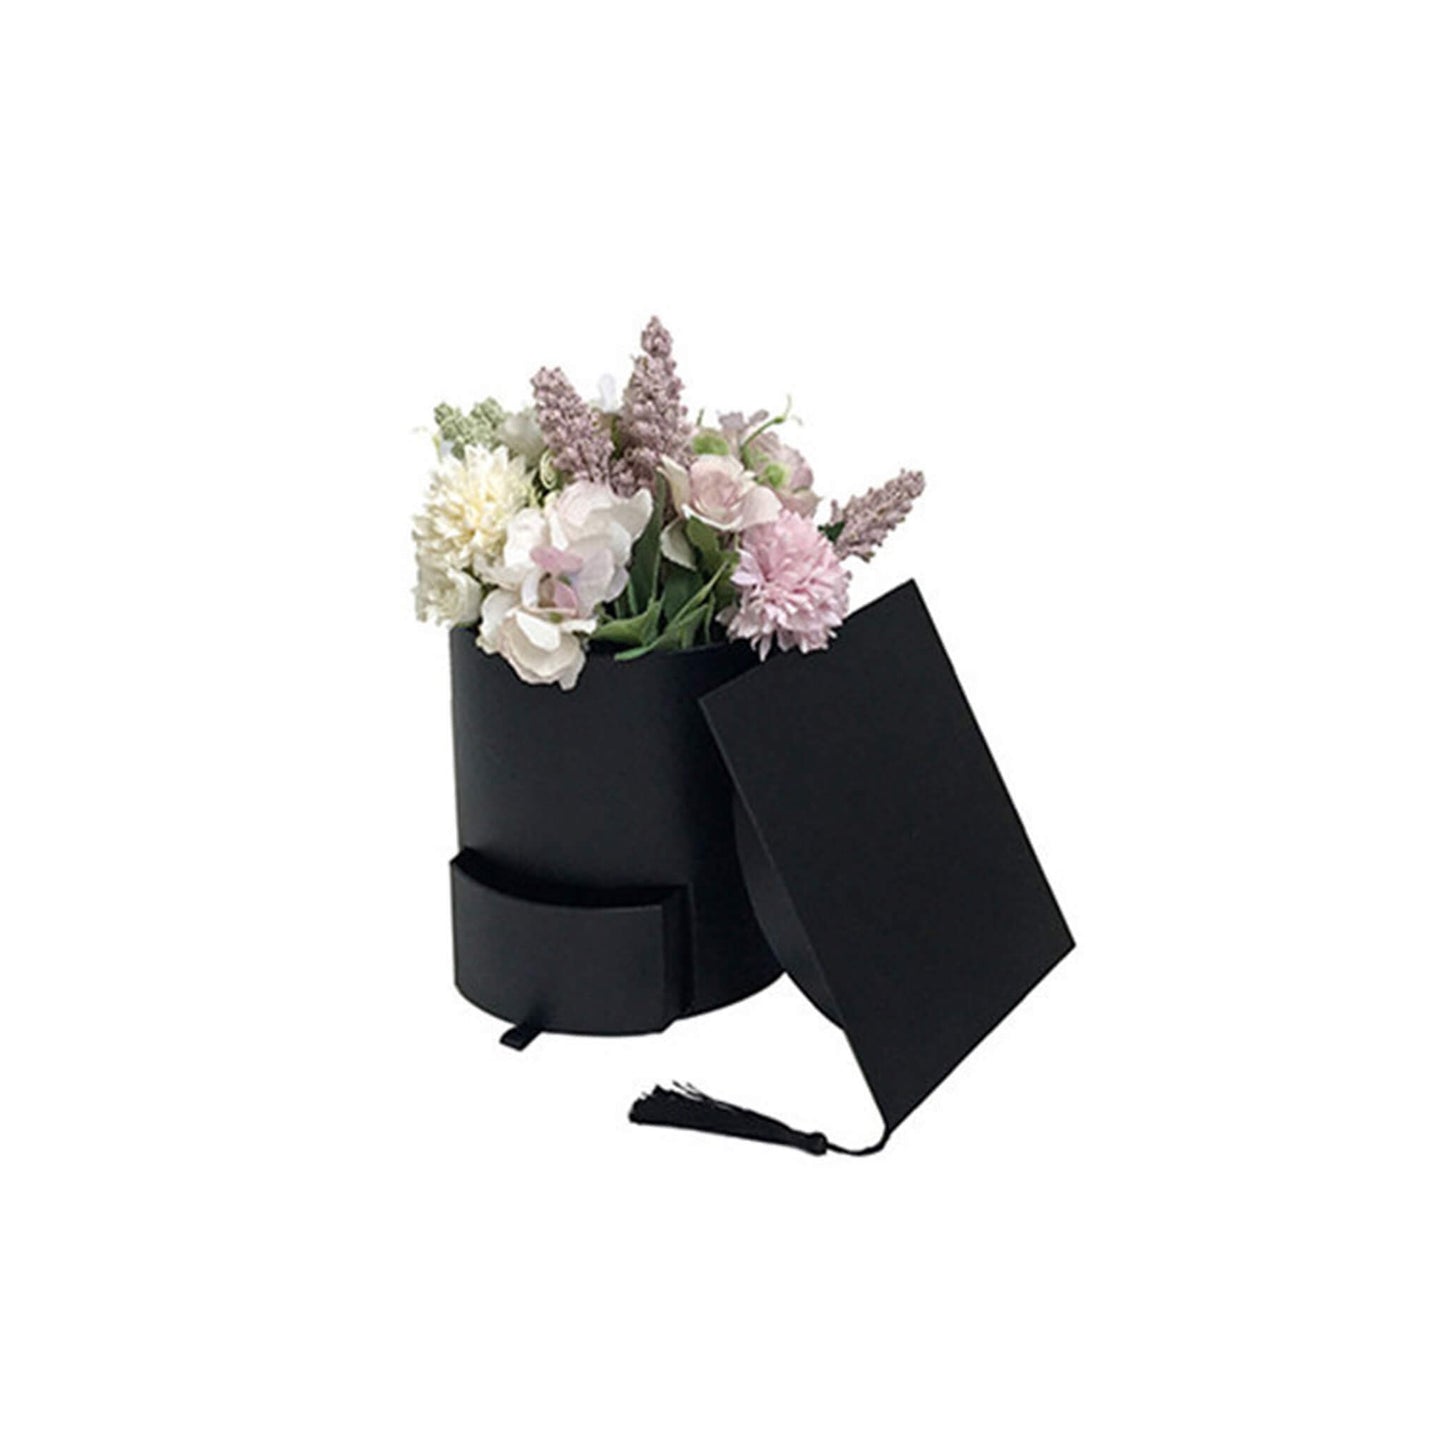 The Flower Box Arrangements - Fantak Box Supplies – Fantak Packaging